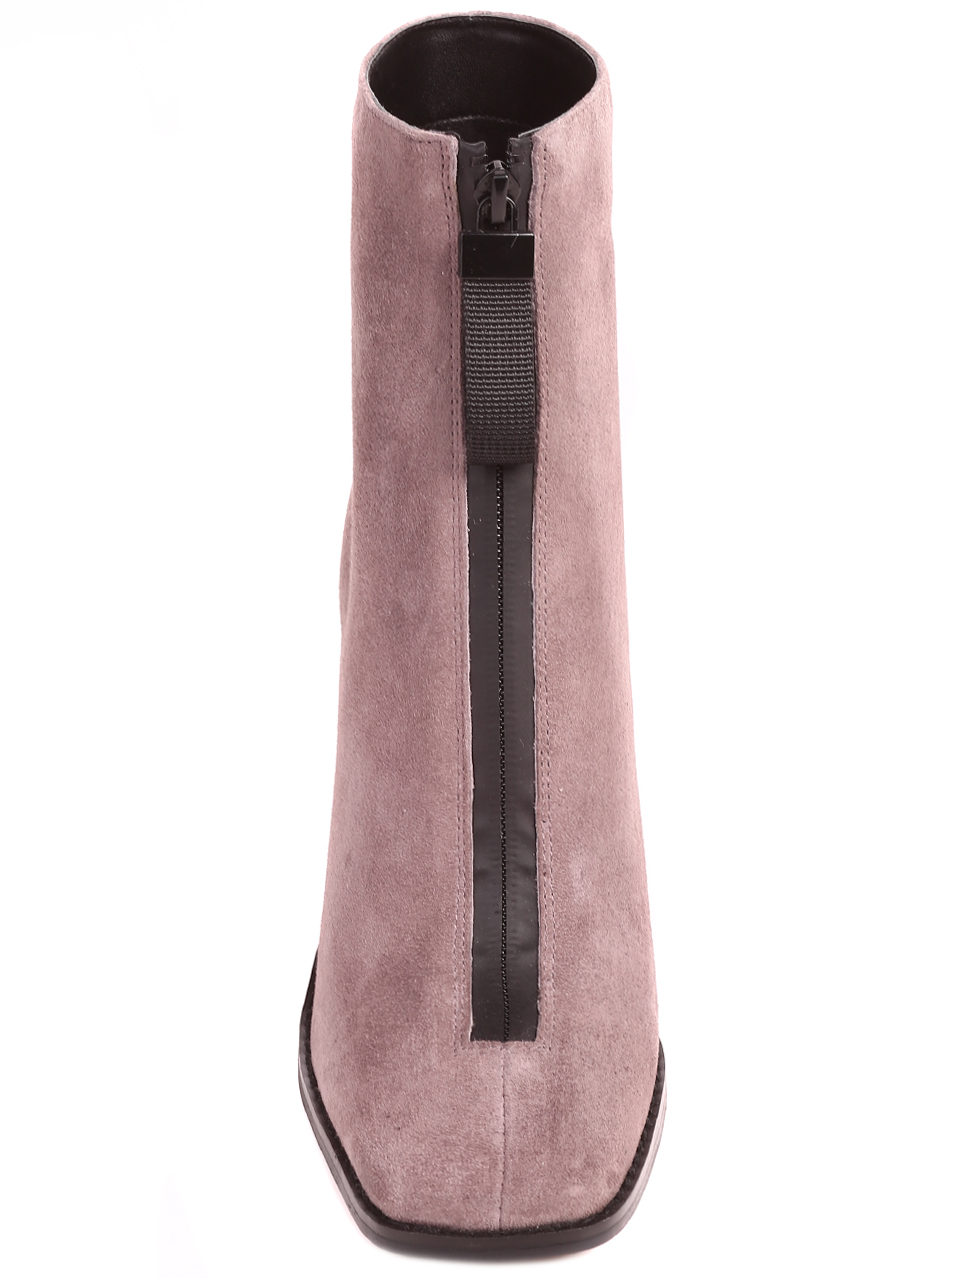 Елегантни дамски боти от велур в сиво H1293-3 grey